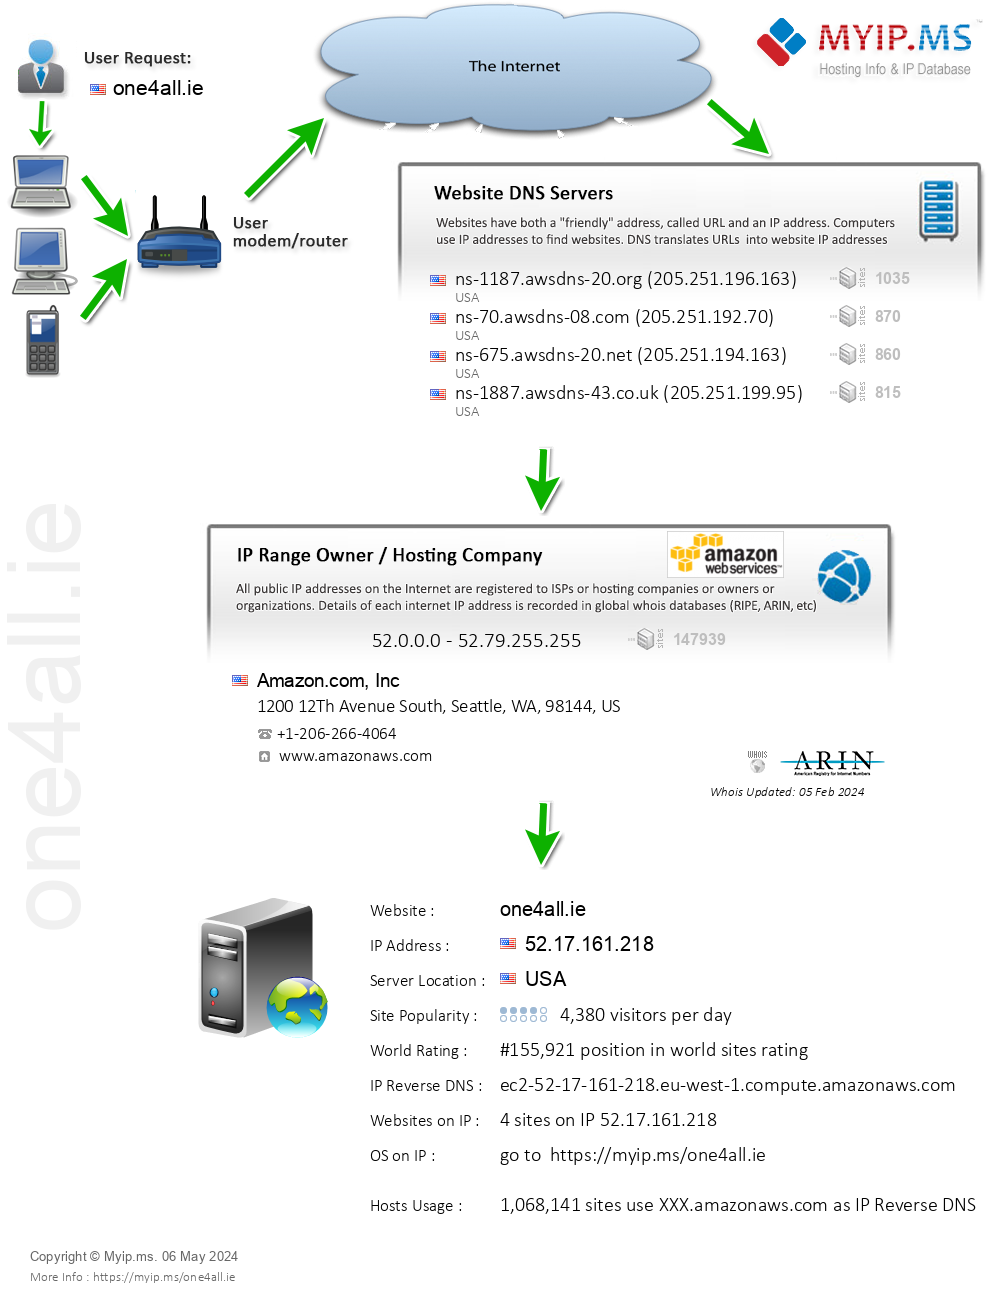 One4all.ie - Website Hosting Visual IP Diagram